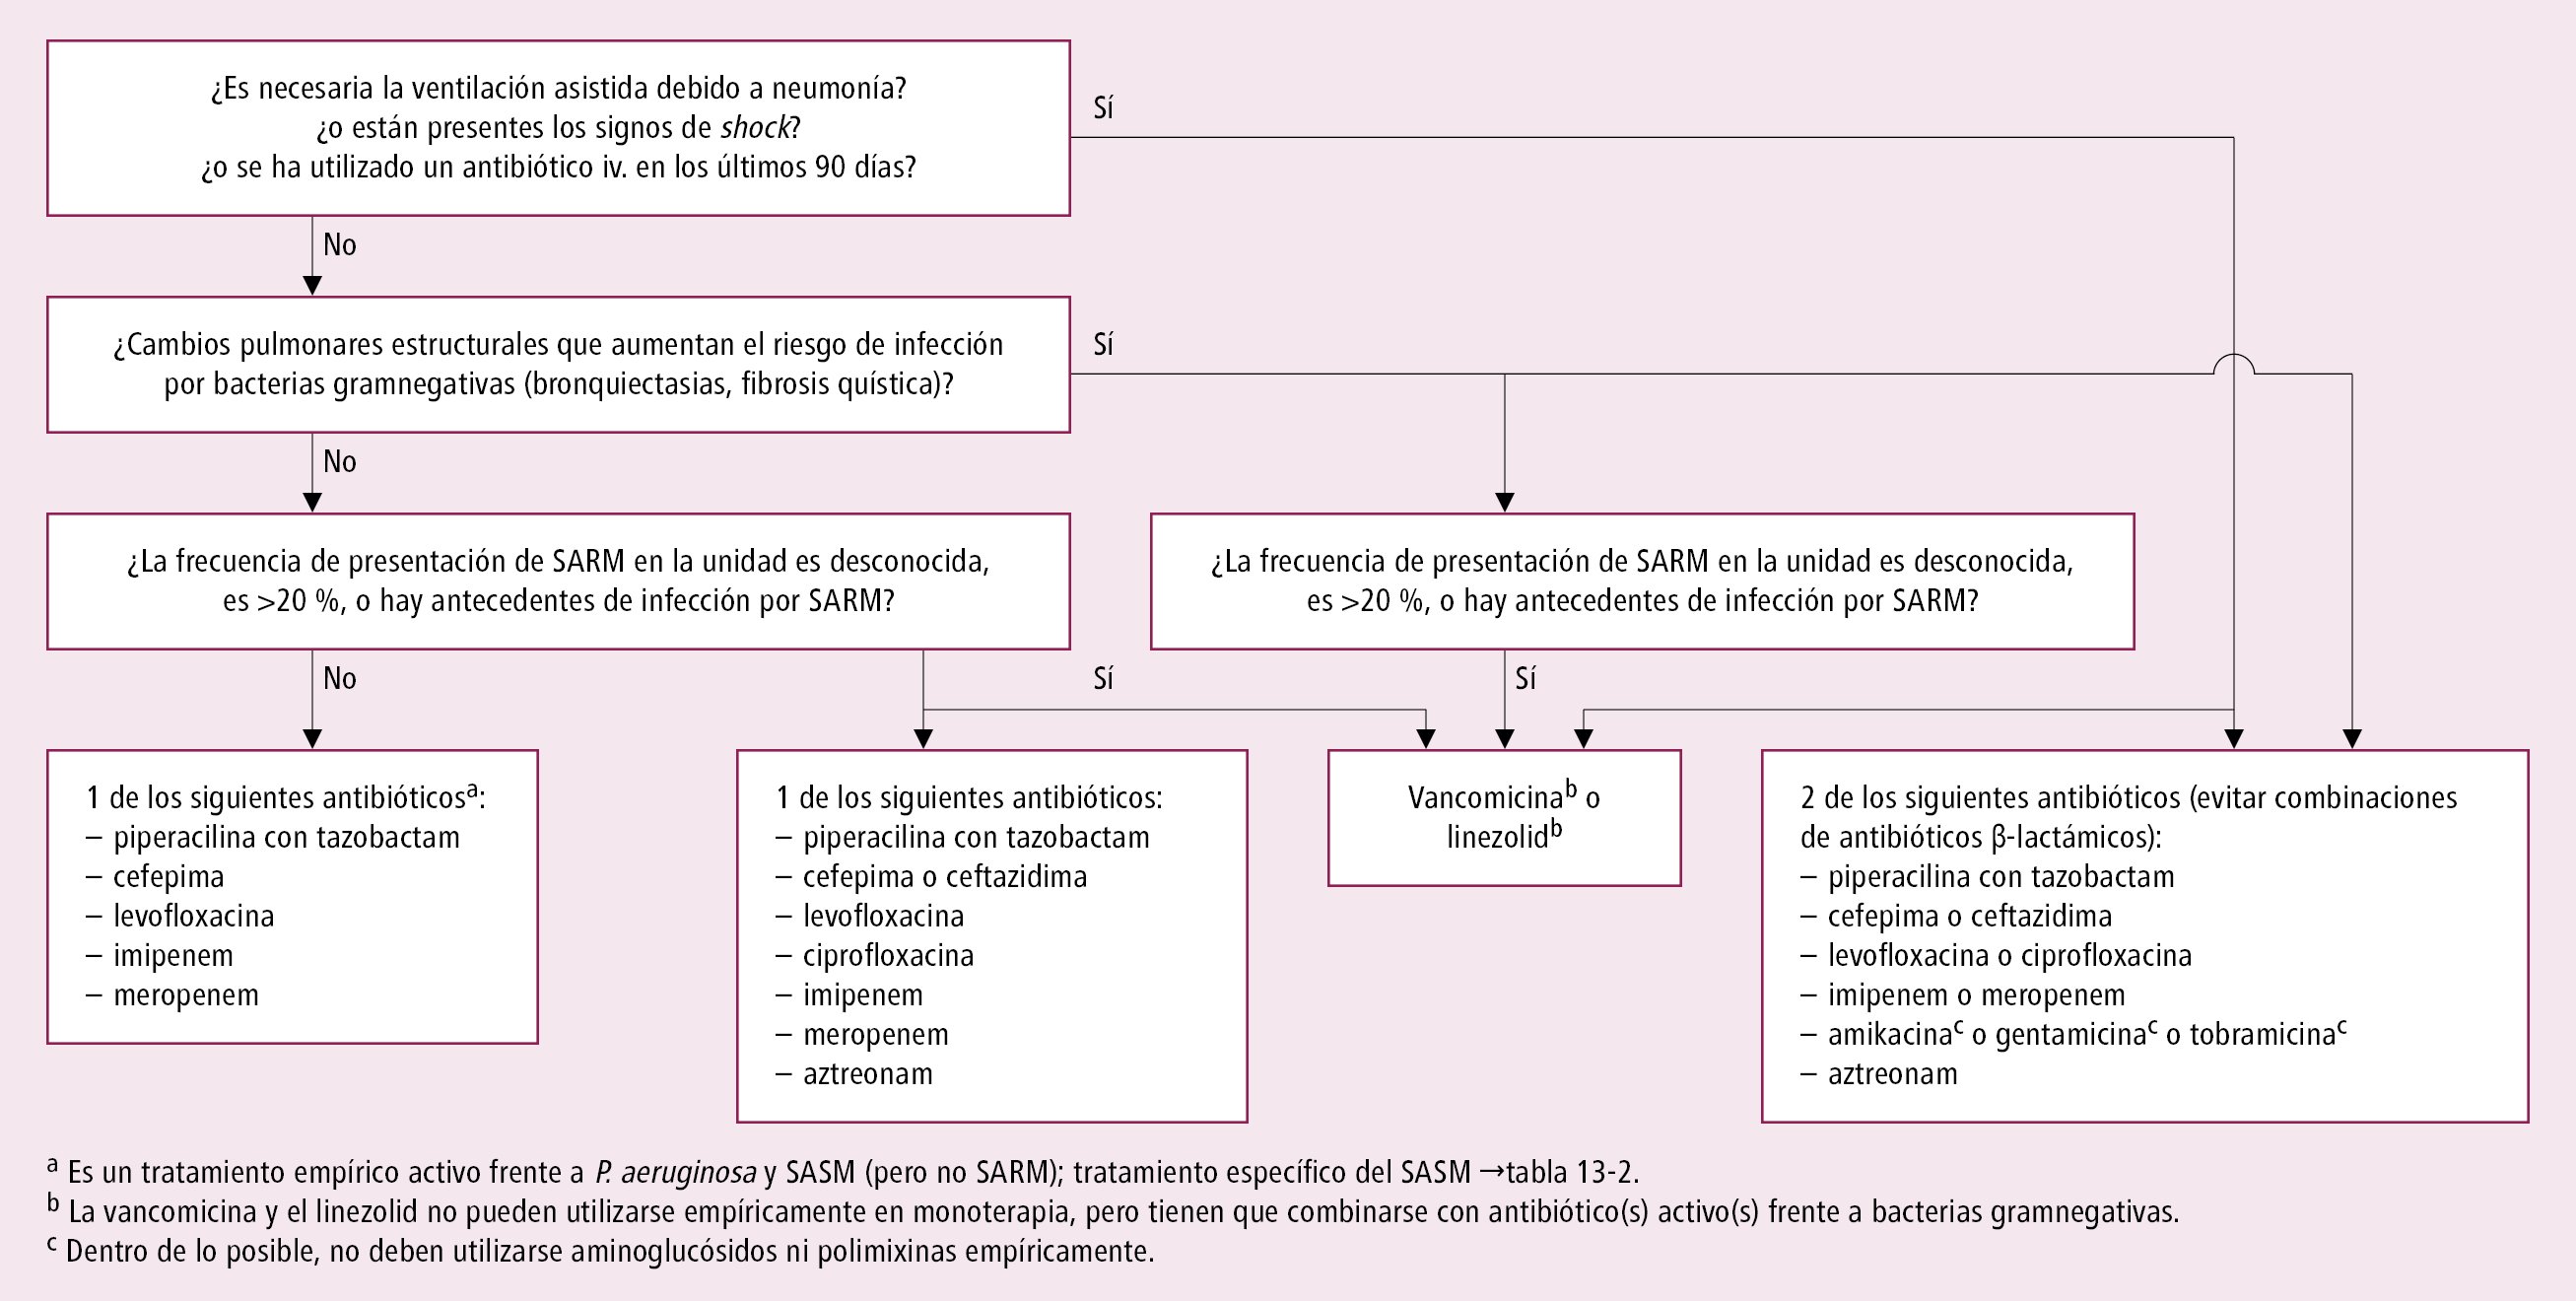    Fig. 3.13-2.  Elección del tratamiento empírico inicial en enfermos con sospecha de neumonía intrahospitalaria (no VAP; a partir de las guías de la IDSA/ATS 2016, modificadas) 